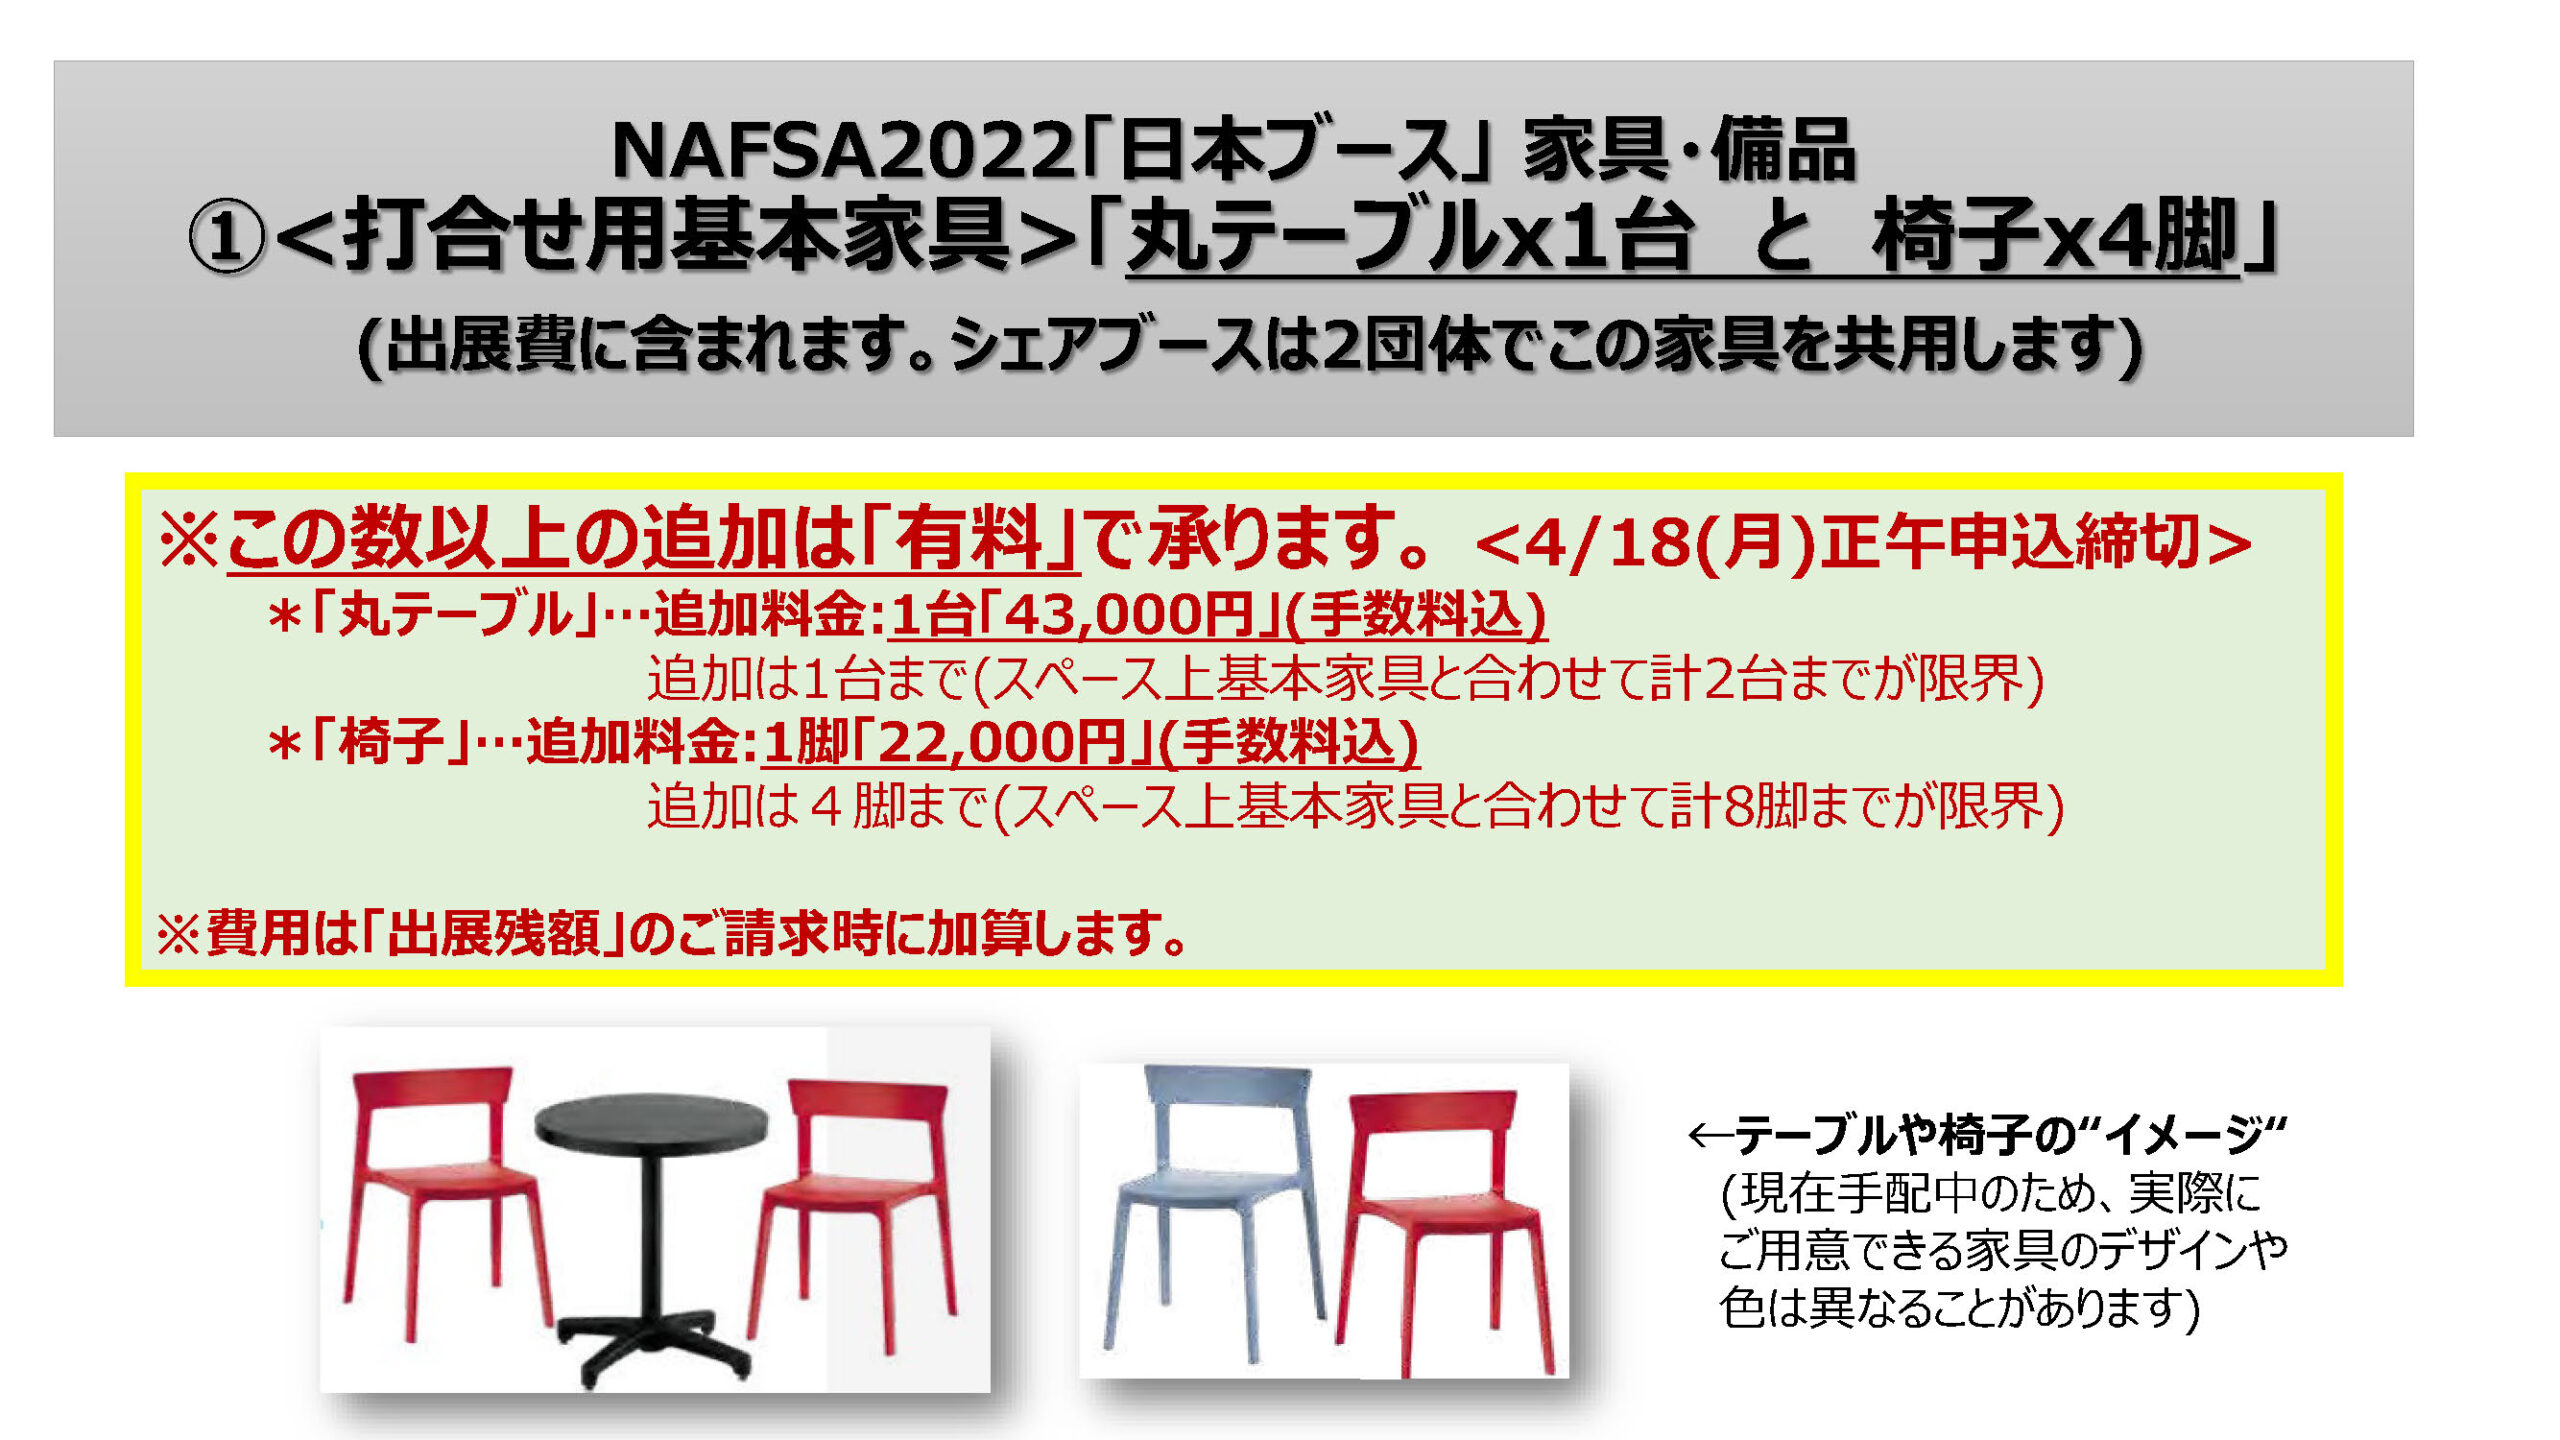 追加家具、赤富士クロス、団体名バナー「イメージ資料」P1 (NAFSA2022)